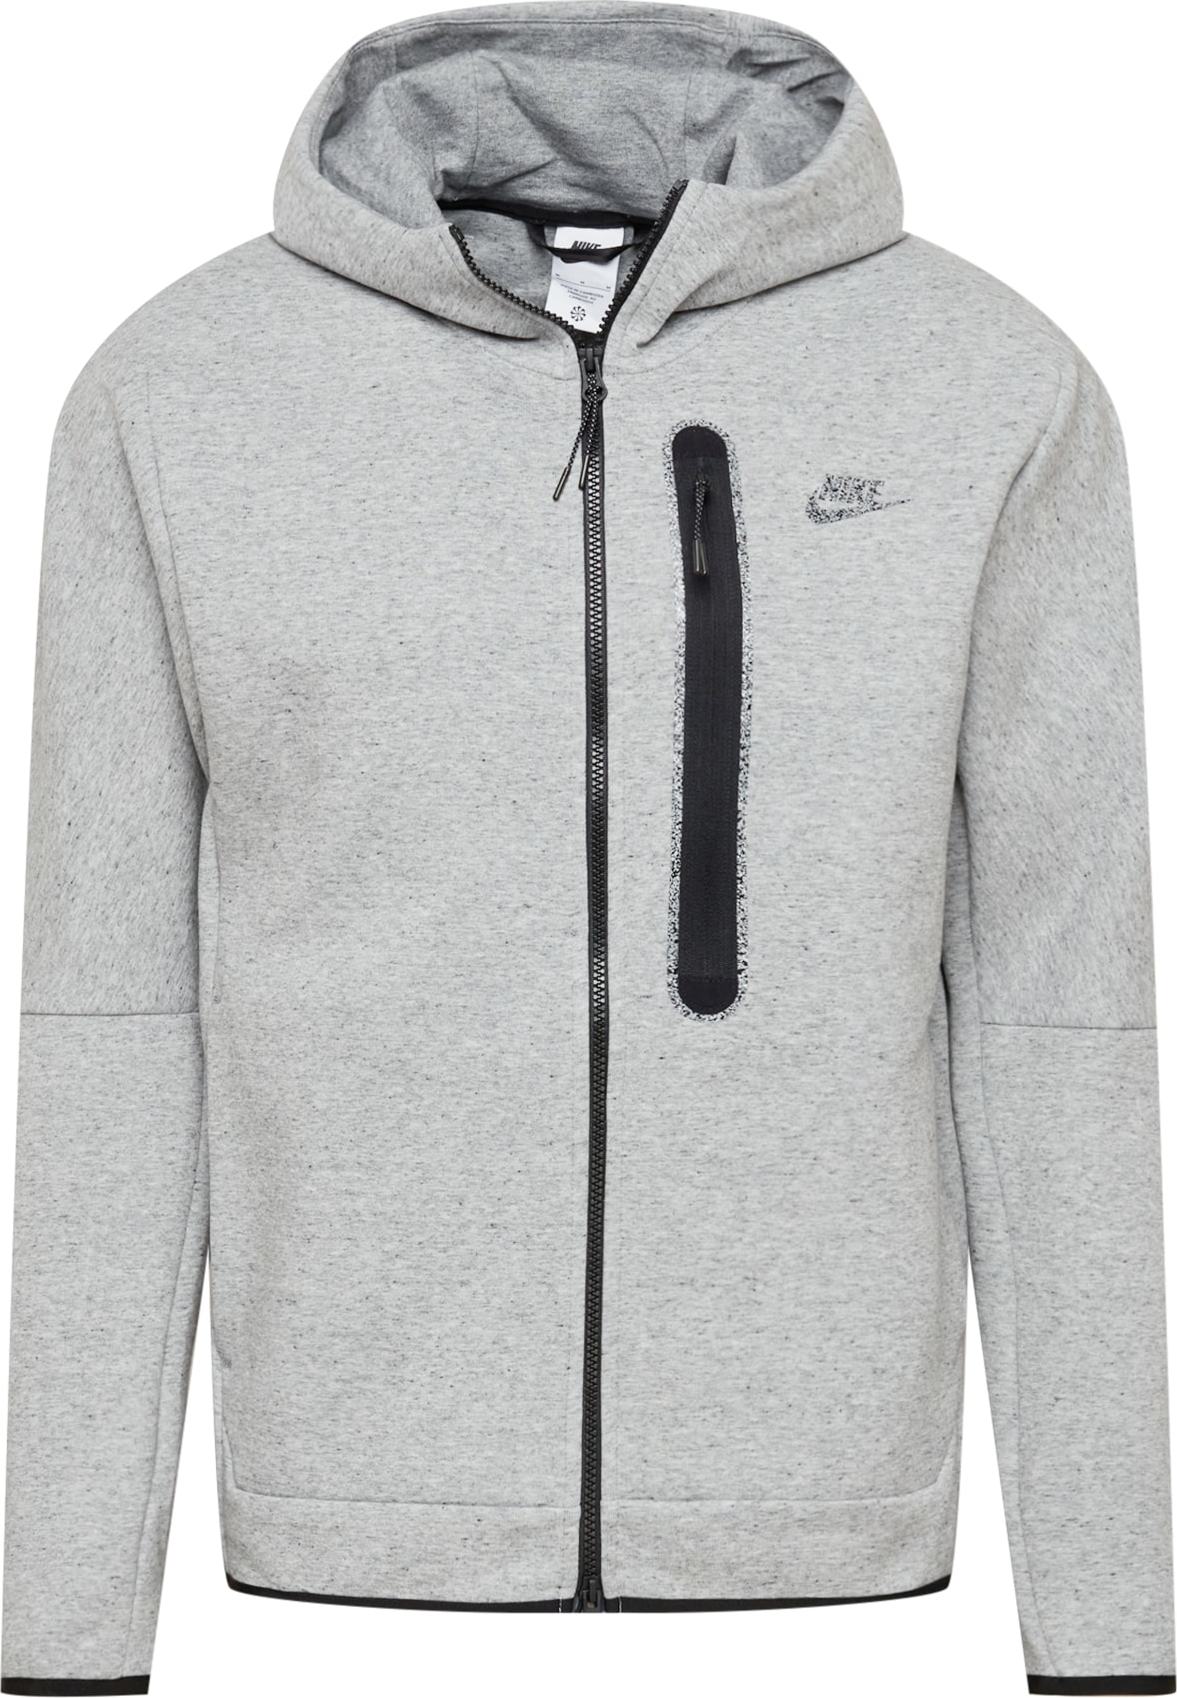 Nike Sportswear Mikina s kapucí šedý melír